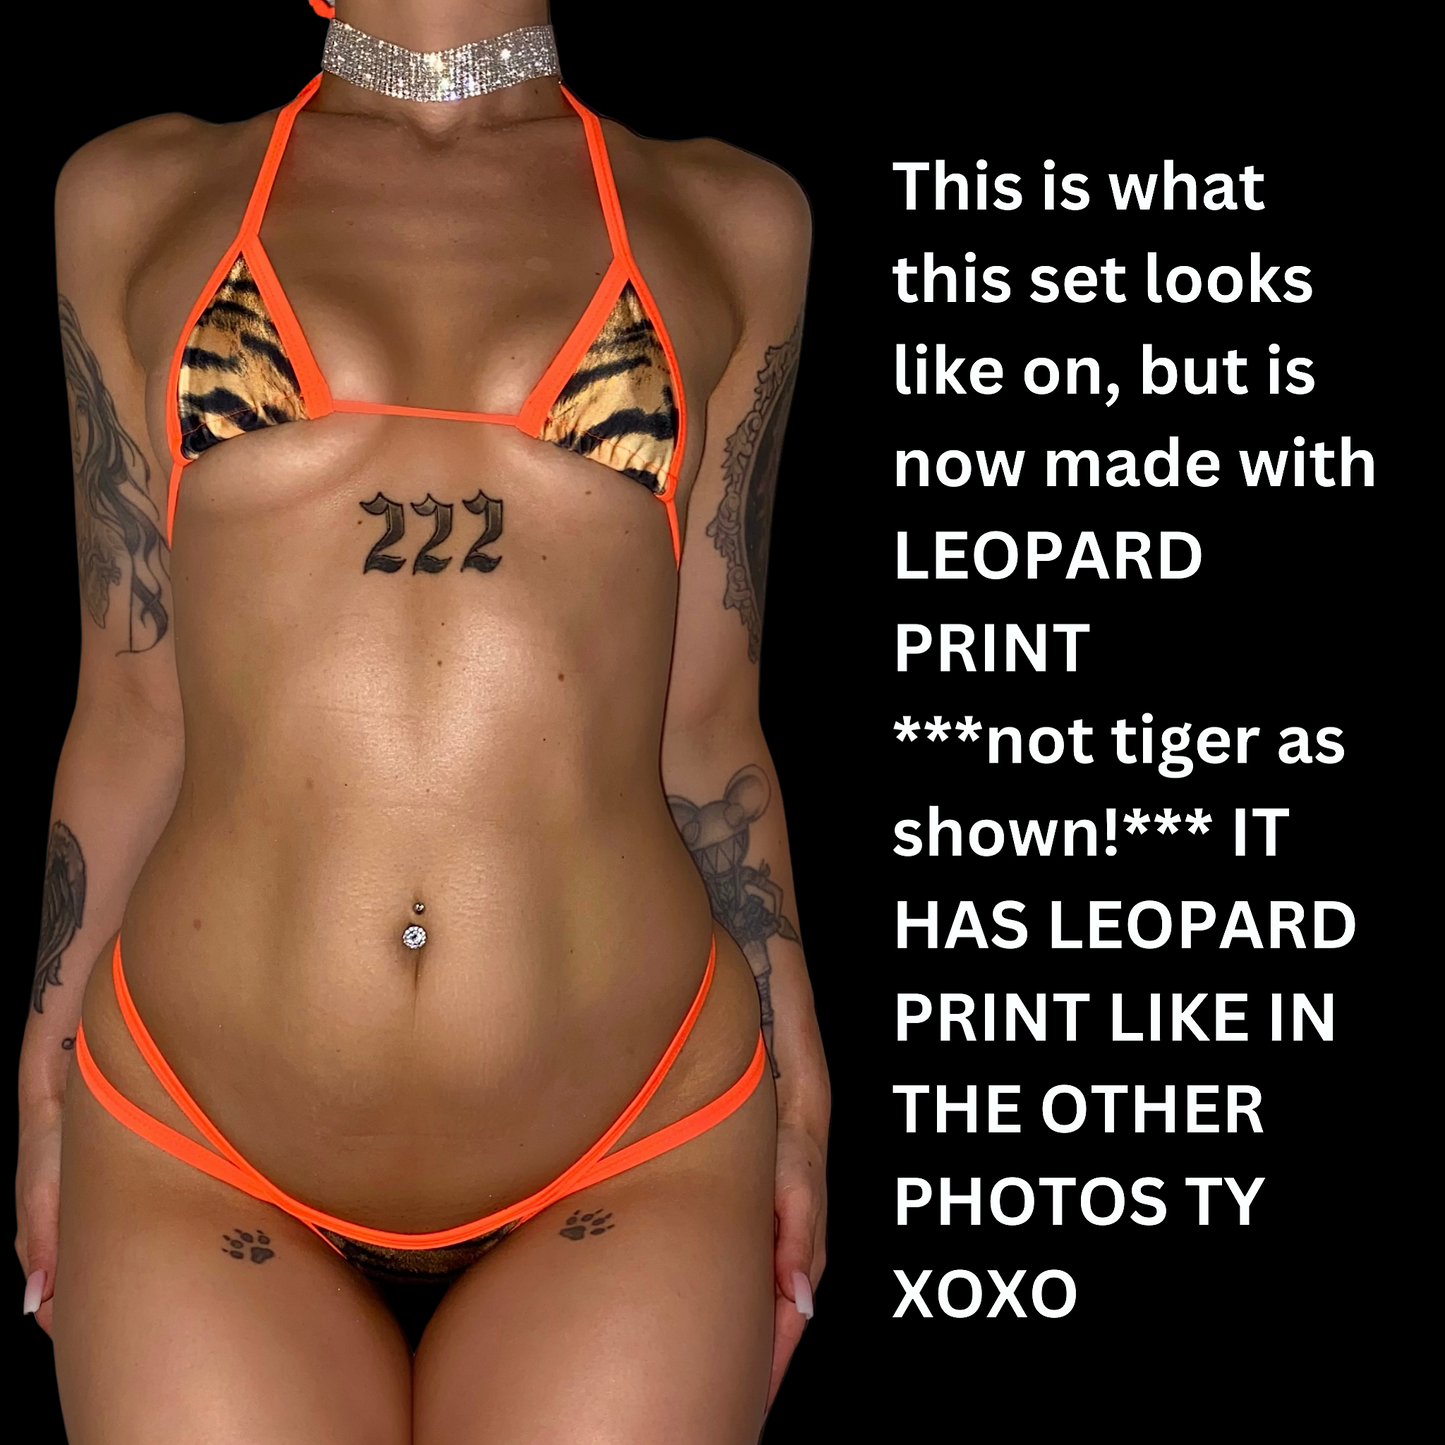 ACE Mini Tri Top: Leopard n' Orange You Glad